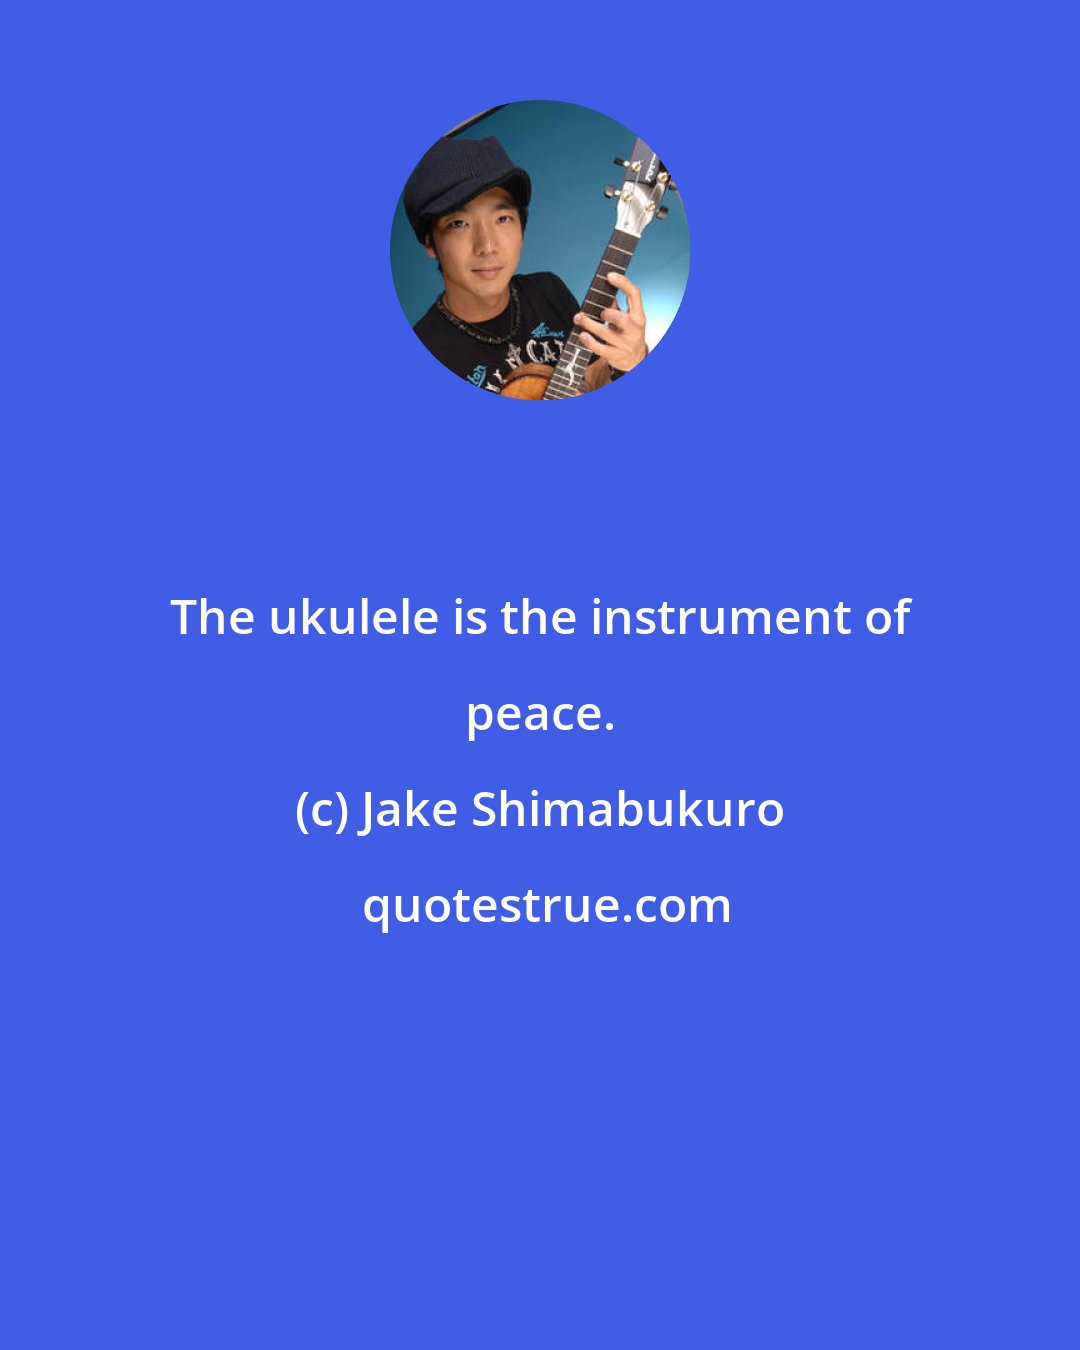 Jake Shimabukuro: The ukulele is the instrument of peace.